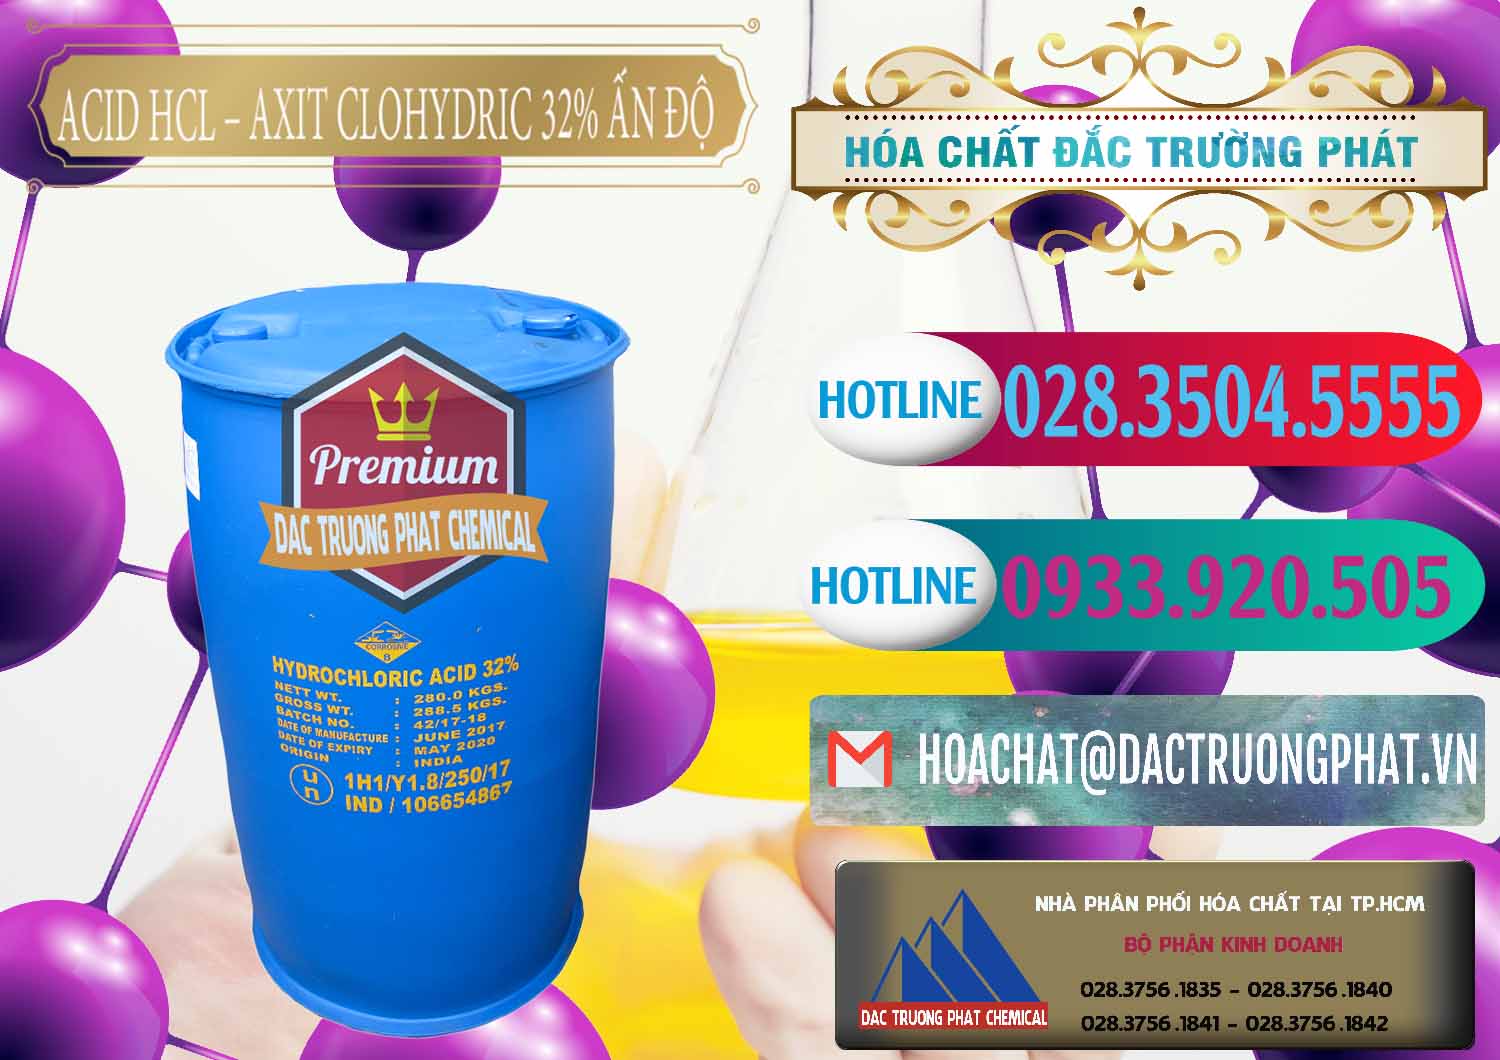 Công ty cung cấp - bán Acid HCL - Axit Cohidric 32% - 35% Ấn Độ India - 0010 - Đơn vị bán - phân phối hóa chất tại TP.HCM - truongphat.vn